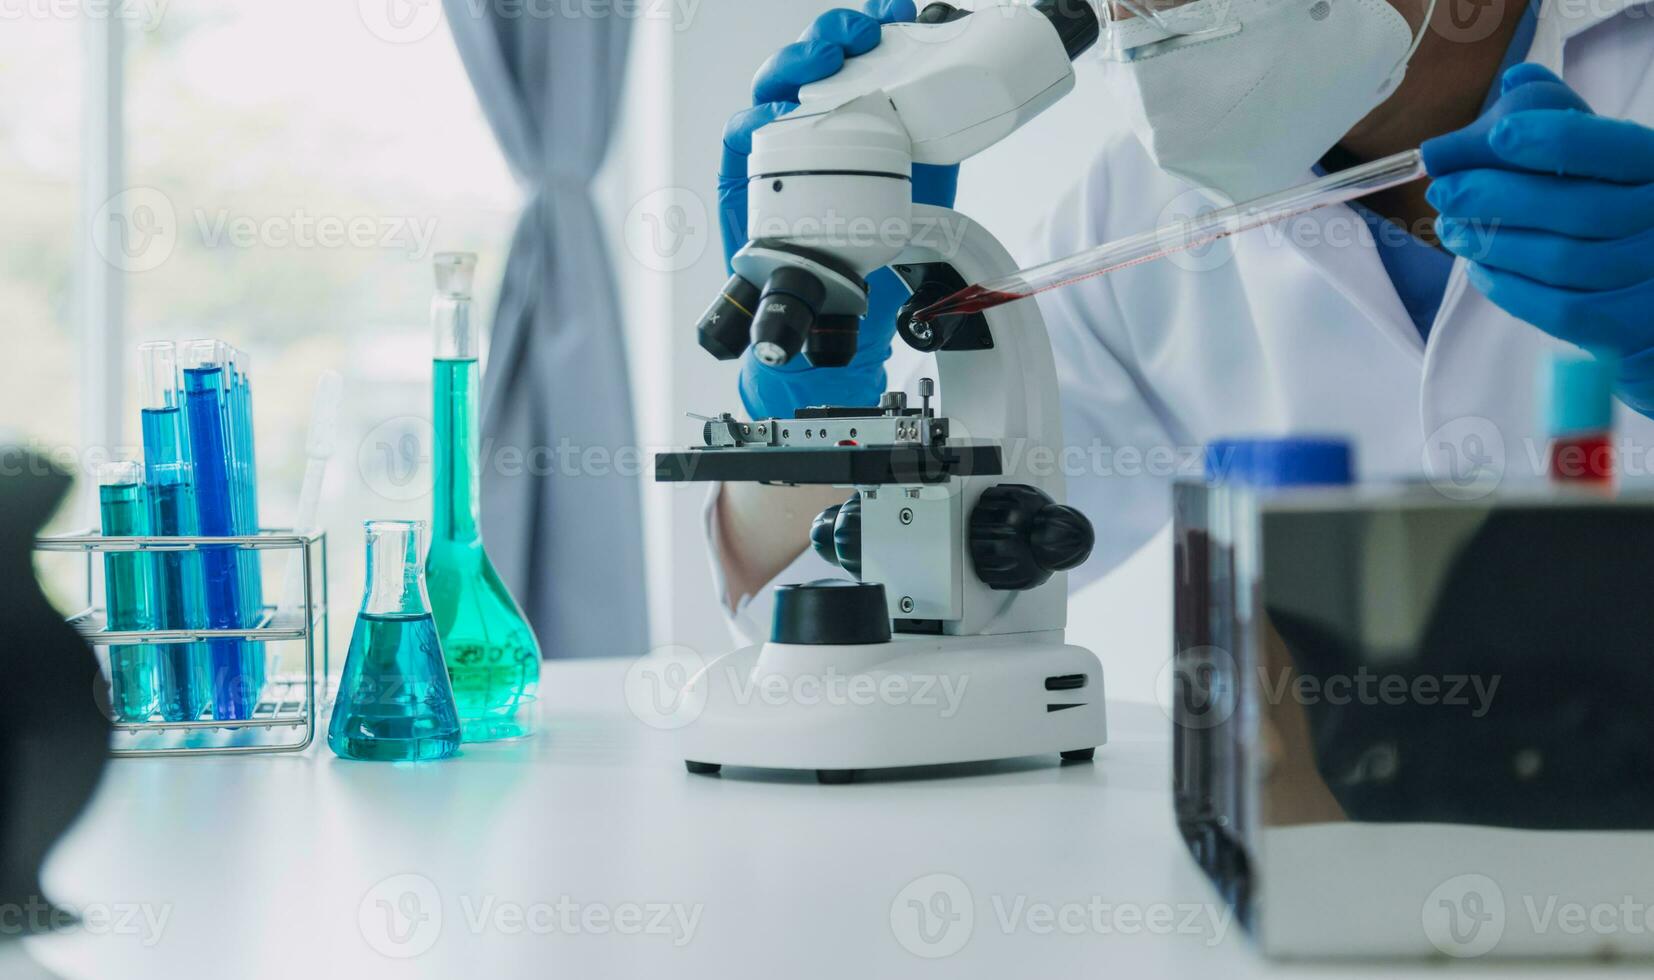 main de scientifique avec tester tube et ballon dans médical chimie laboratoire bleu bannière Contexte photo